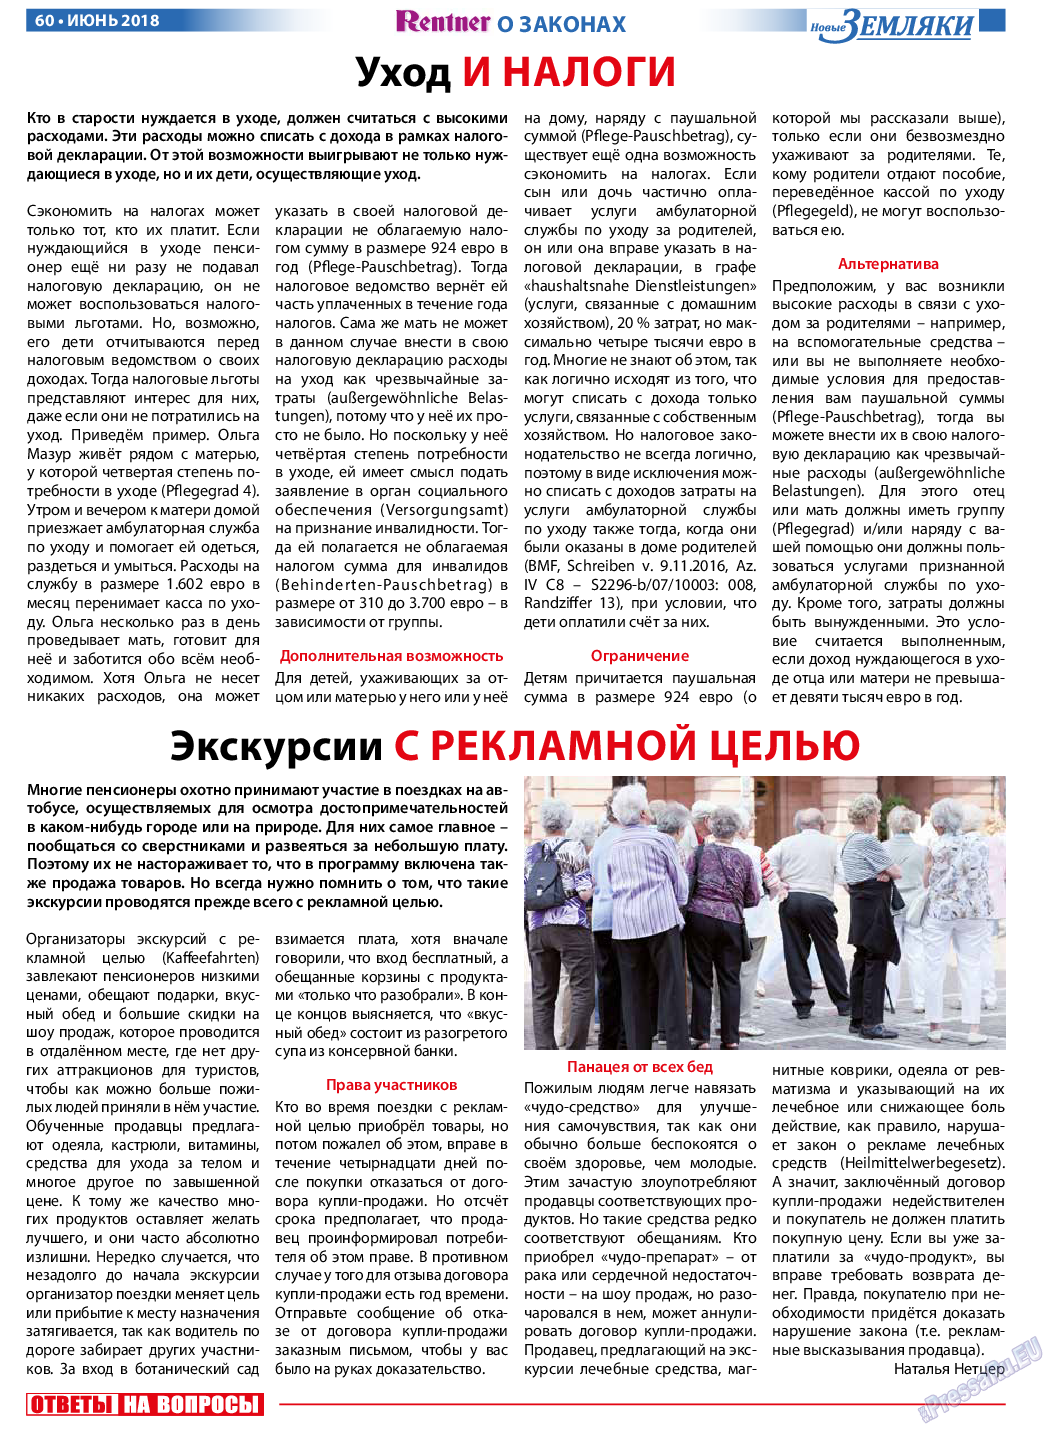 Новые Земляки, газета. 2018 №6 стр.60